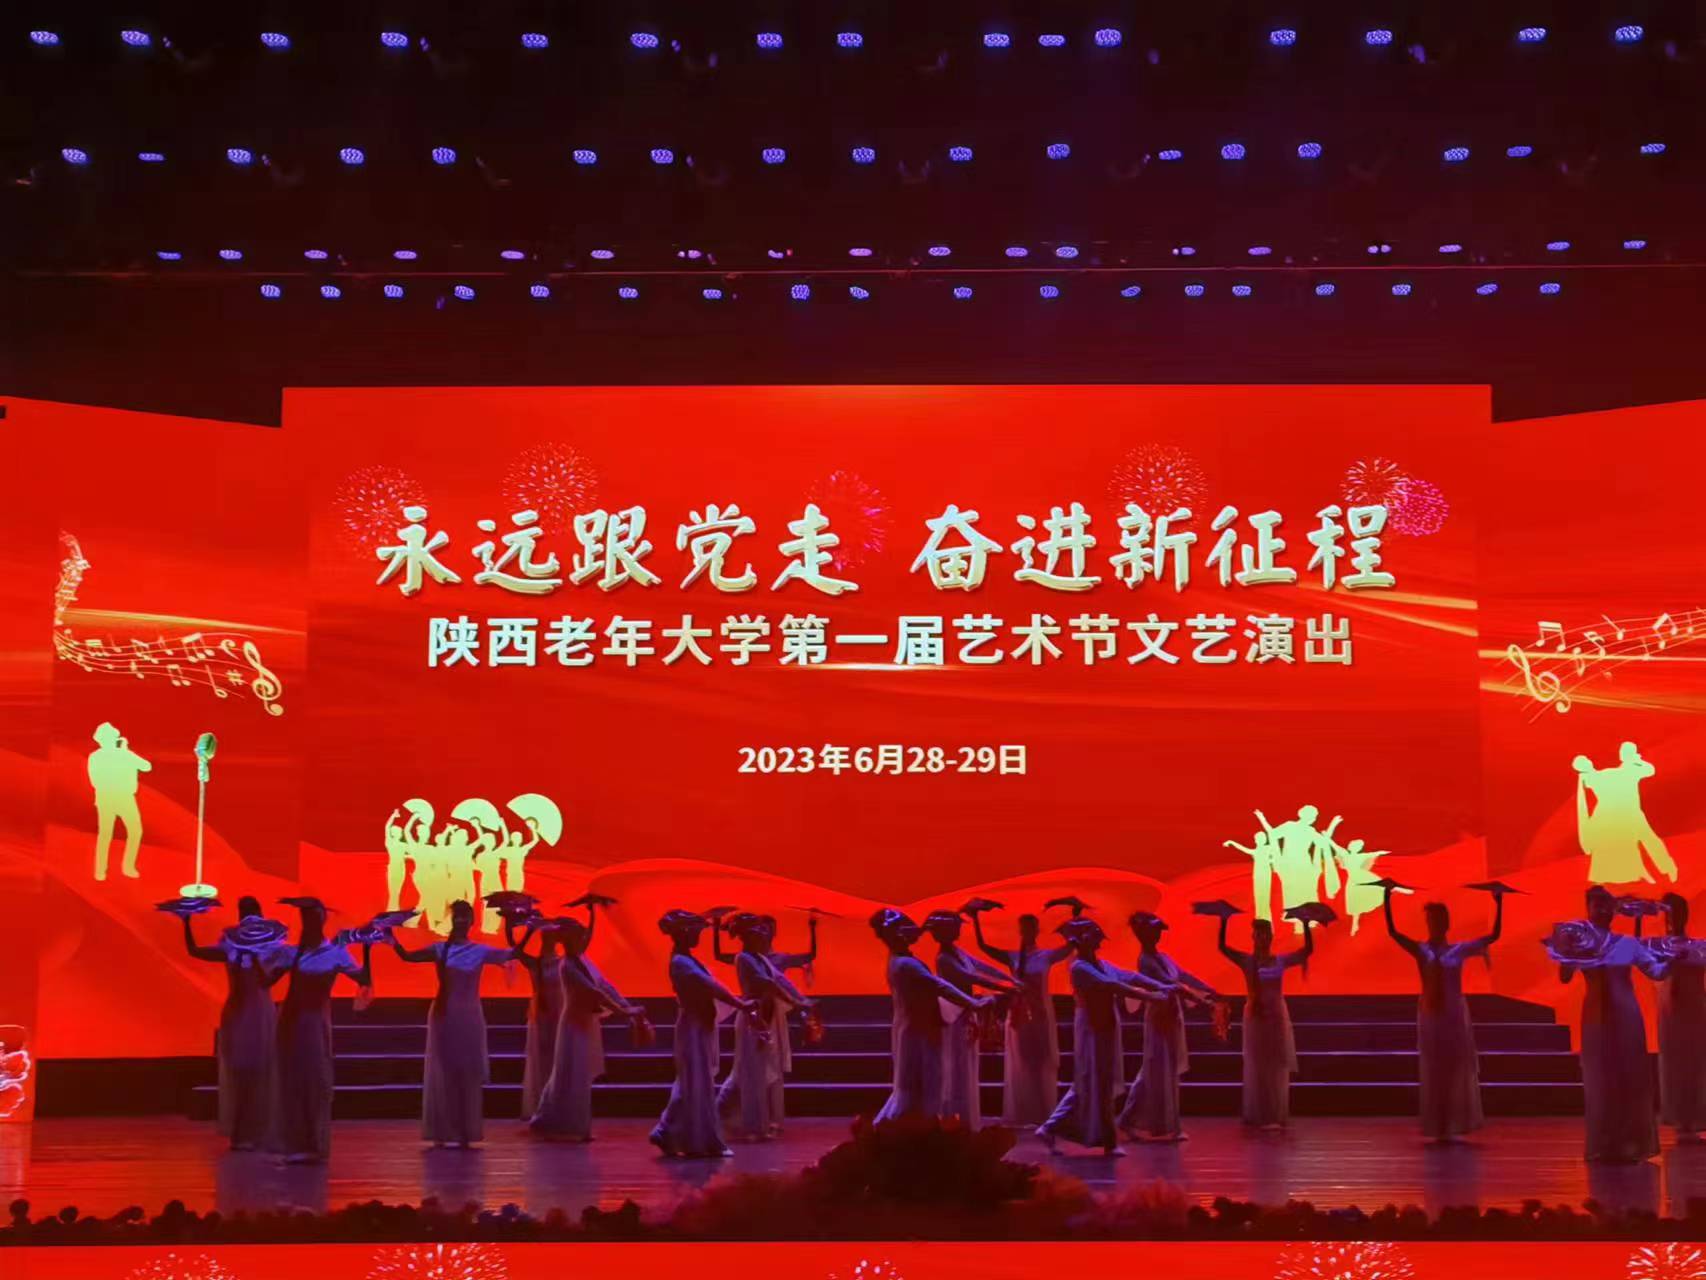 庆祝中国共产党成立102周年暨陕西老年大学第一届艺术节文艺演出隆重举行